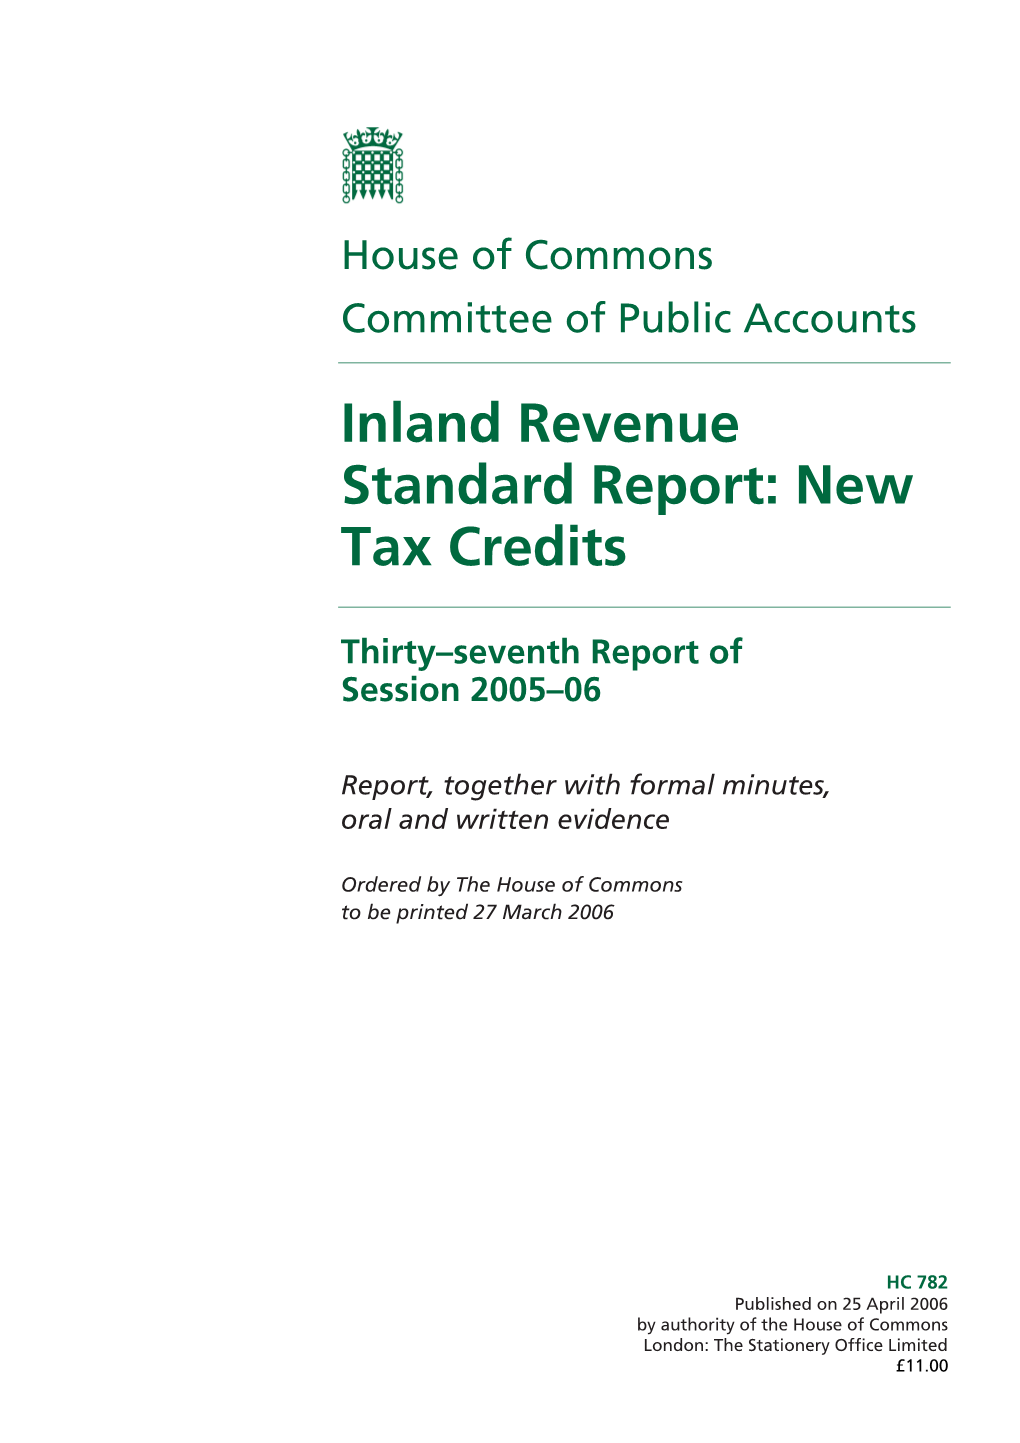 Inland Revenue Standard Report: New Tax Credits